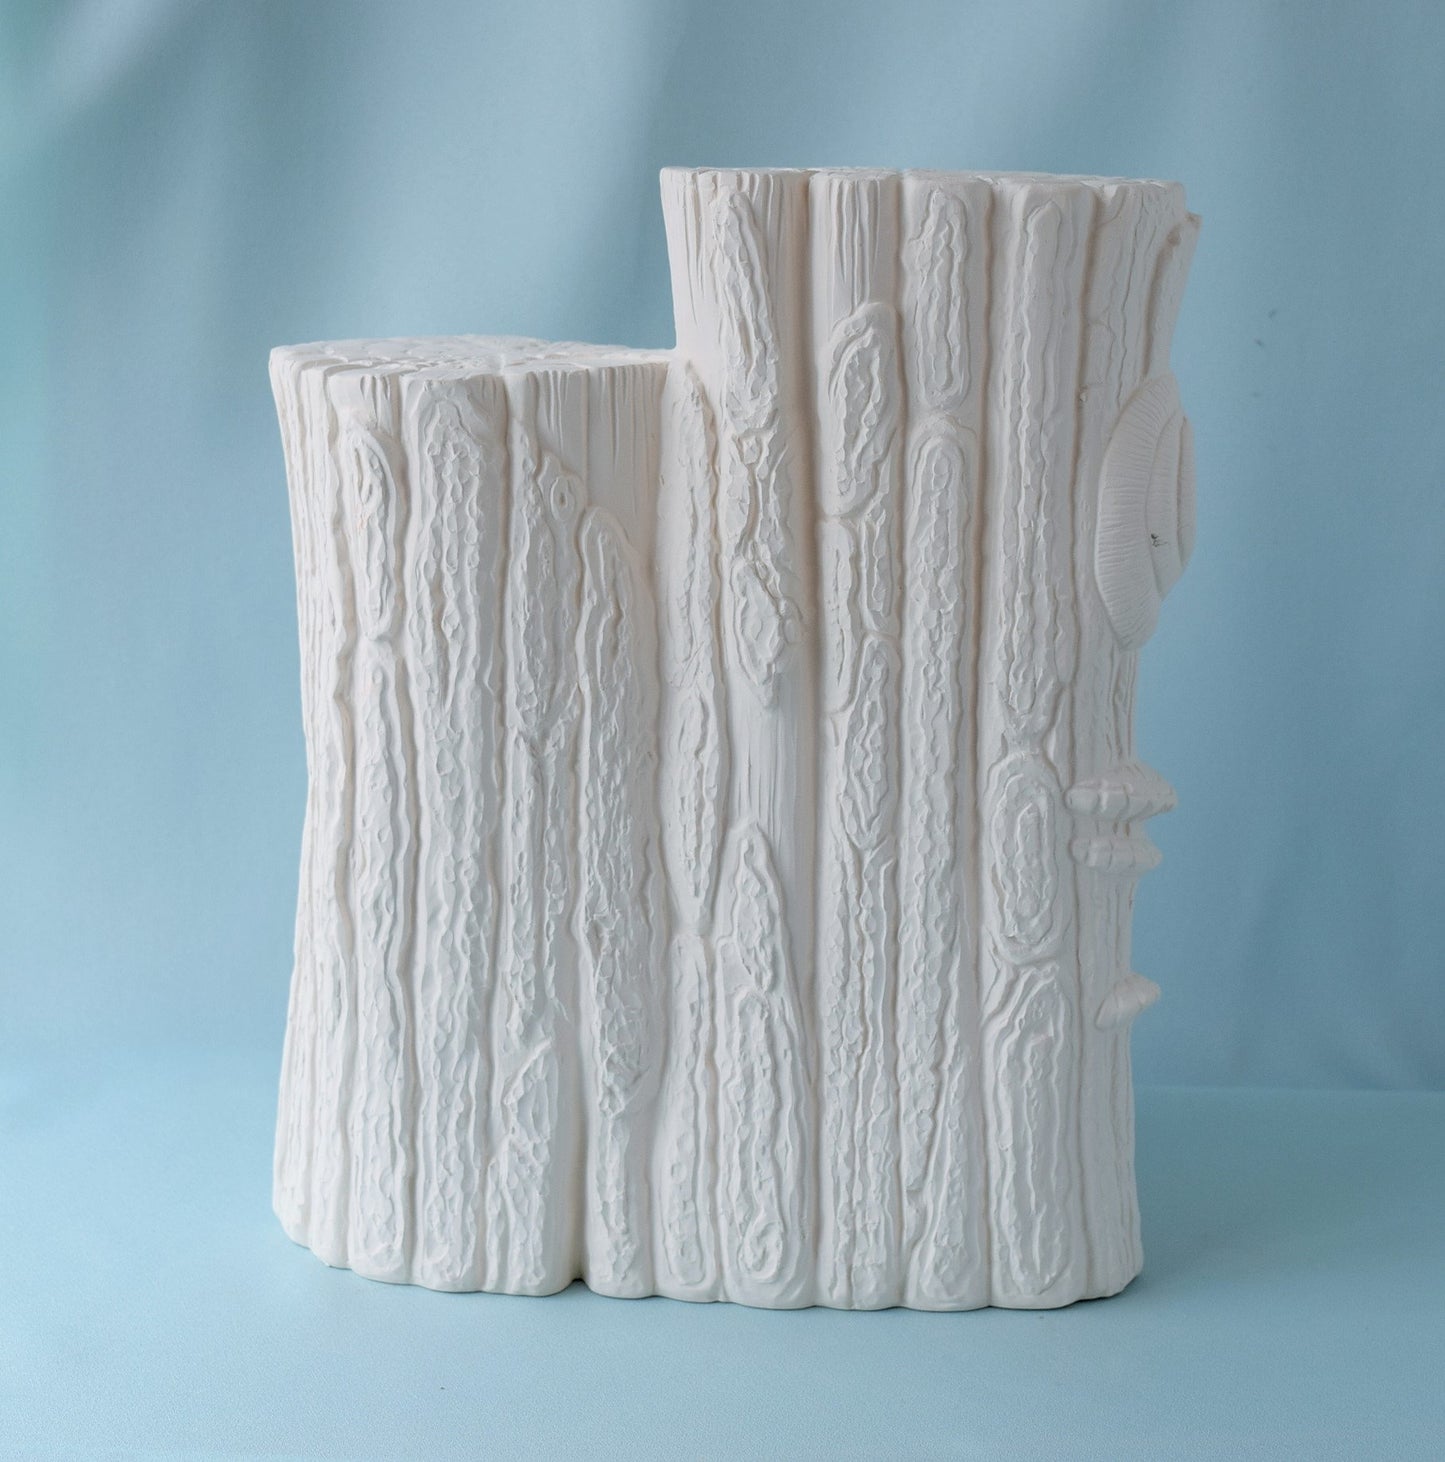 Bisque Ceramic Stump | DIY Project